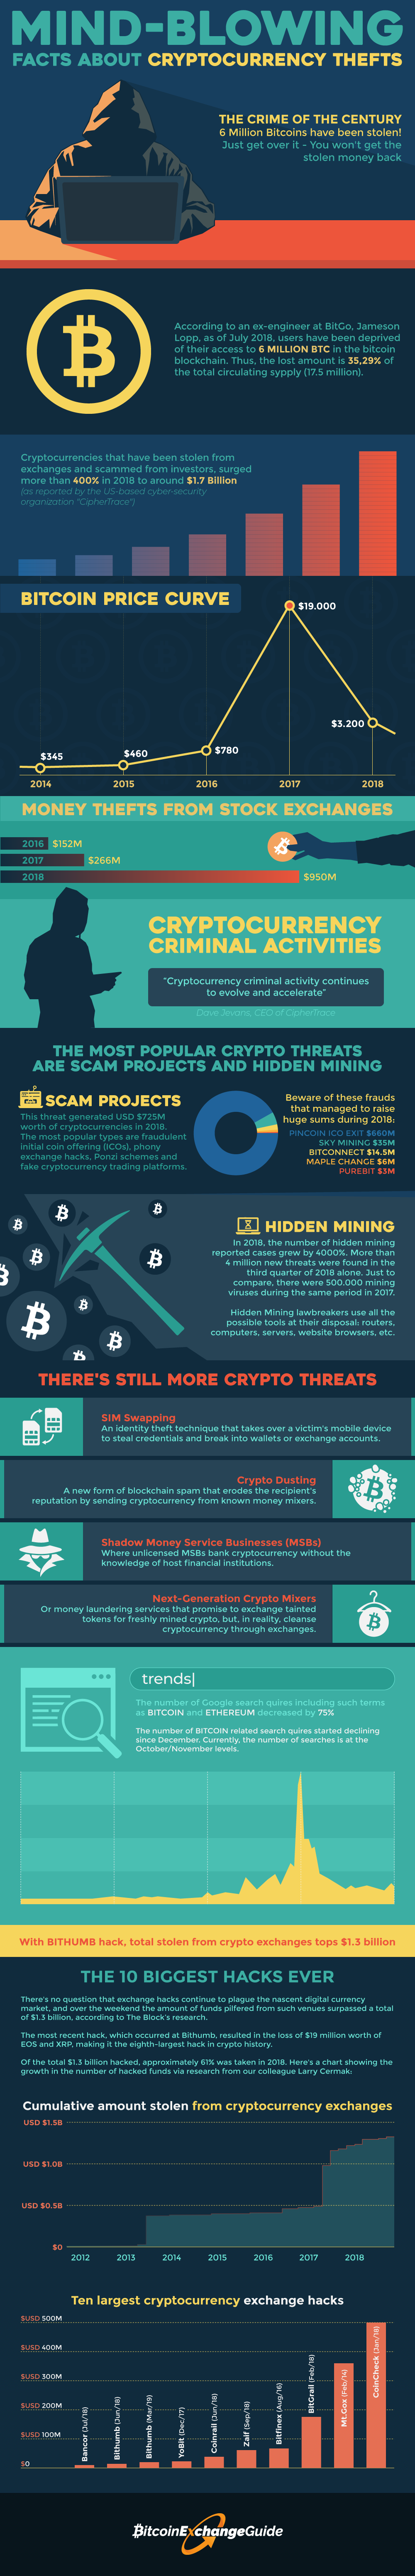 bitcoin-scams-crypto-hacks infographic